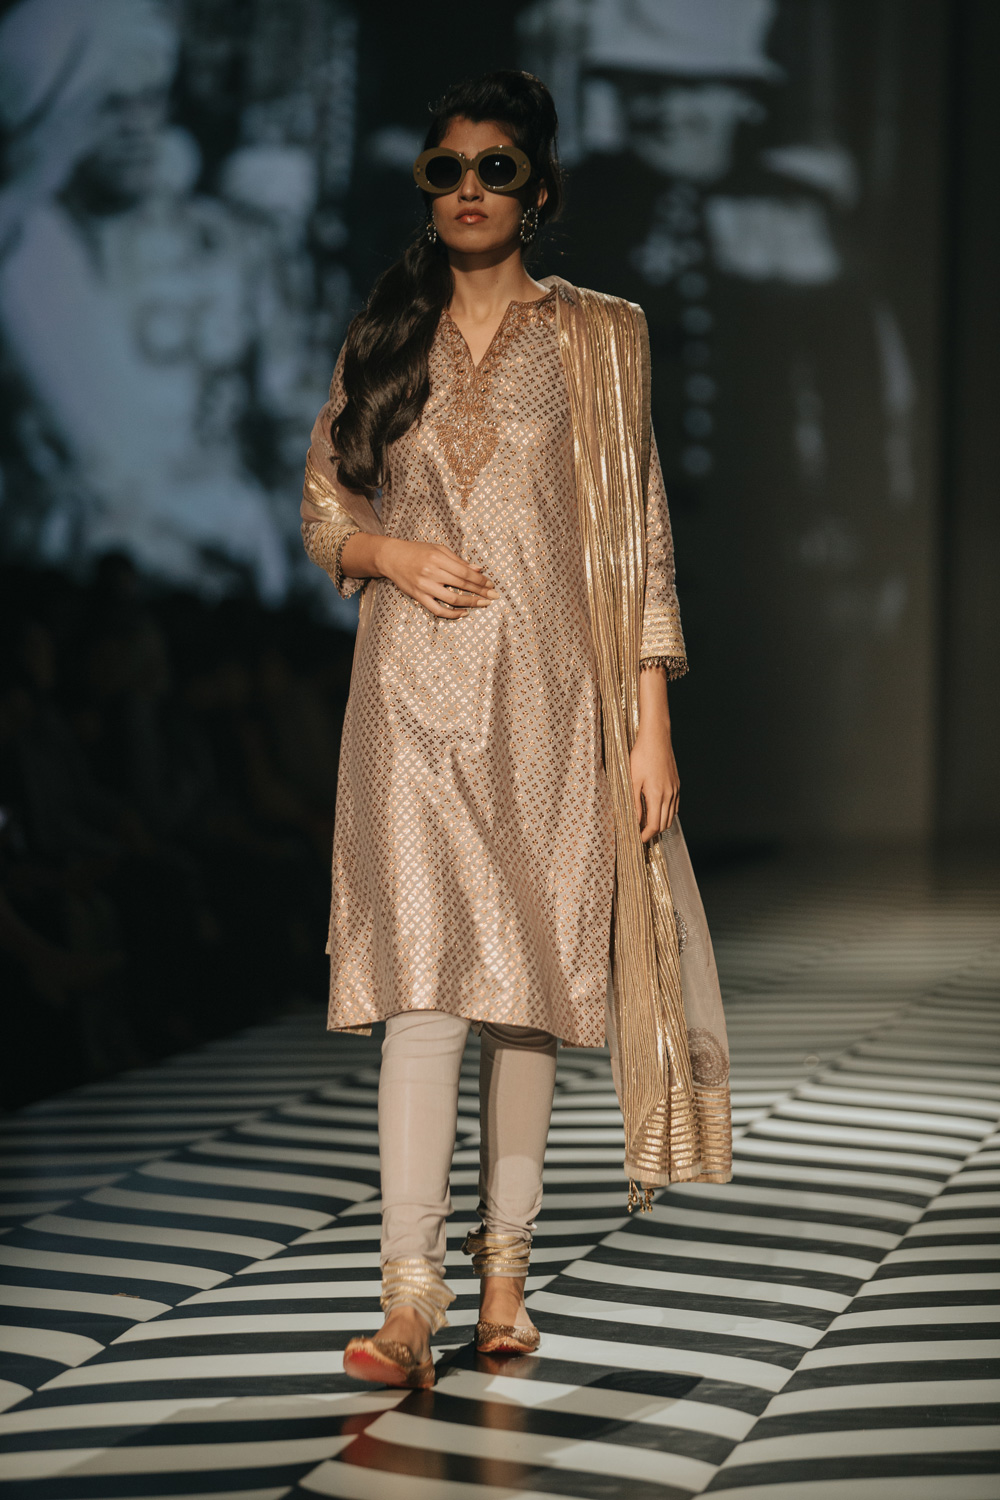 JJ Valaya FDCI Amazon India Fashion Week Spring Summer 2018 Look 29